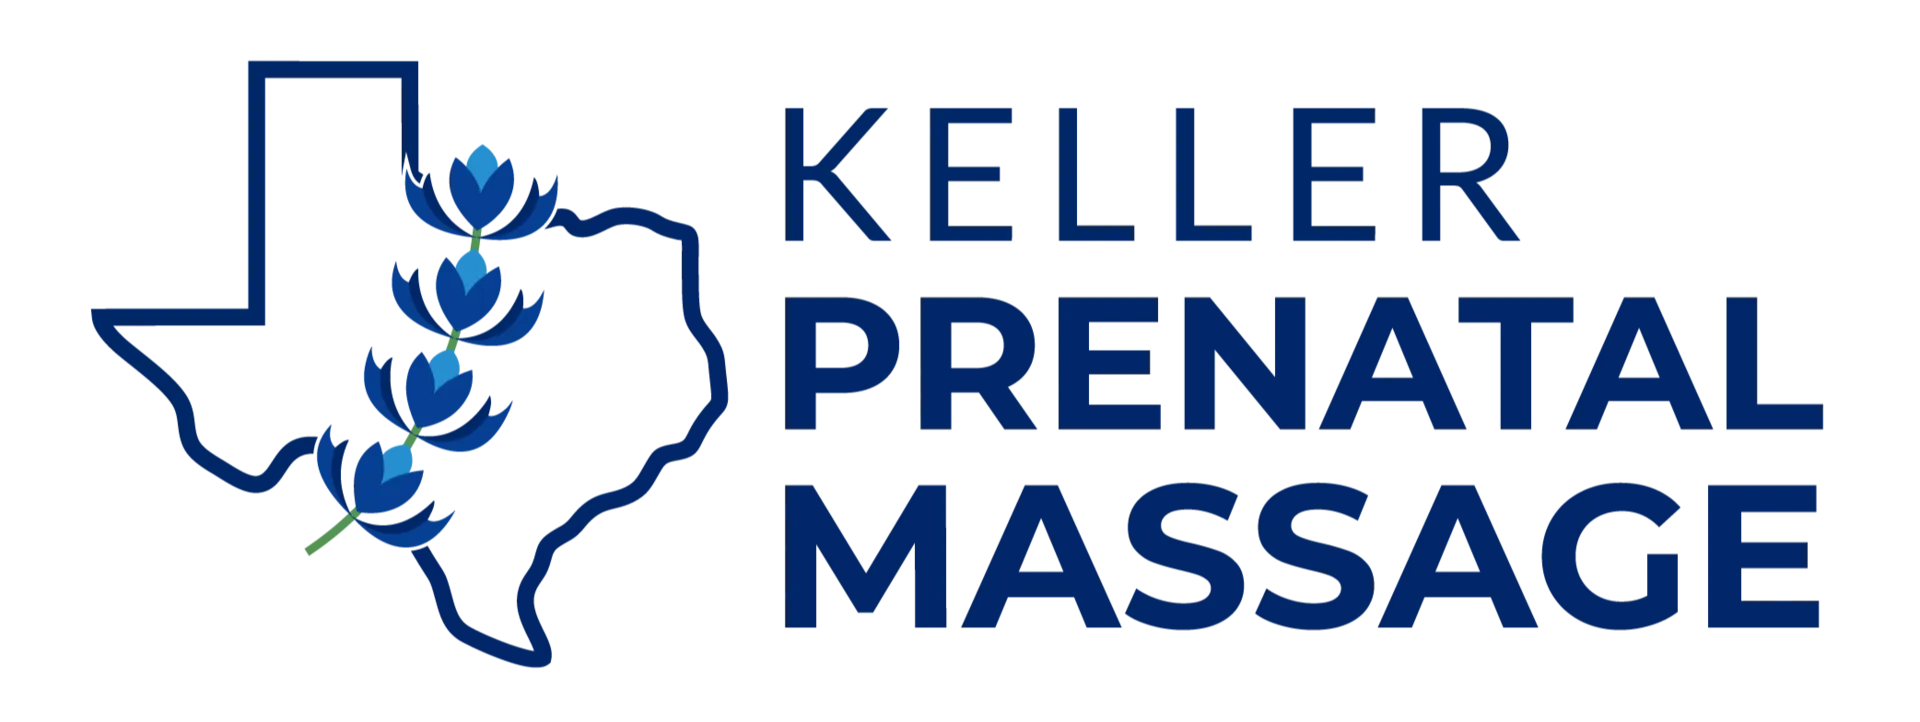 Keller Prenatal Massage